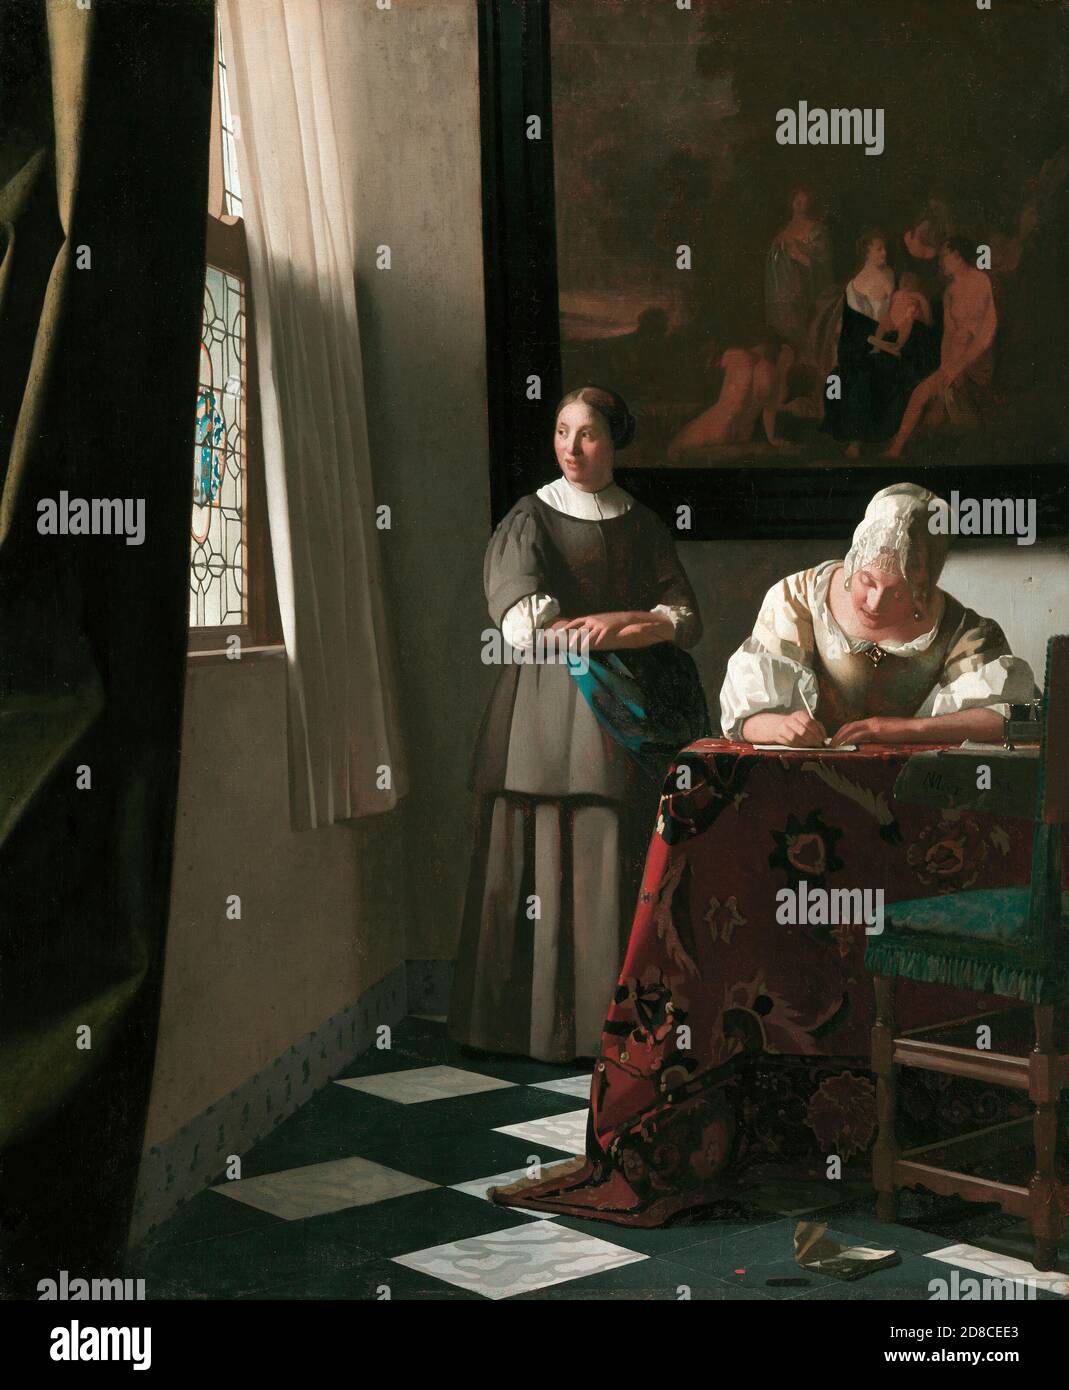 Título: Dama escribiendo una carta con su Maid Creador: Johannes Vermeer Fecha: c.1670 Medio: Óleo sobre lienzo Dimensiones: 72.2 x 59.5 cm ubicación: Galería Nacional de Irlanda, Dublín Foto de stock